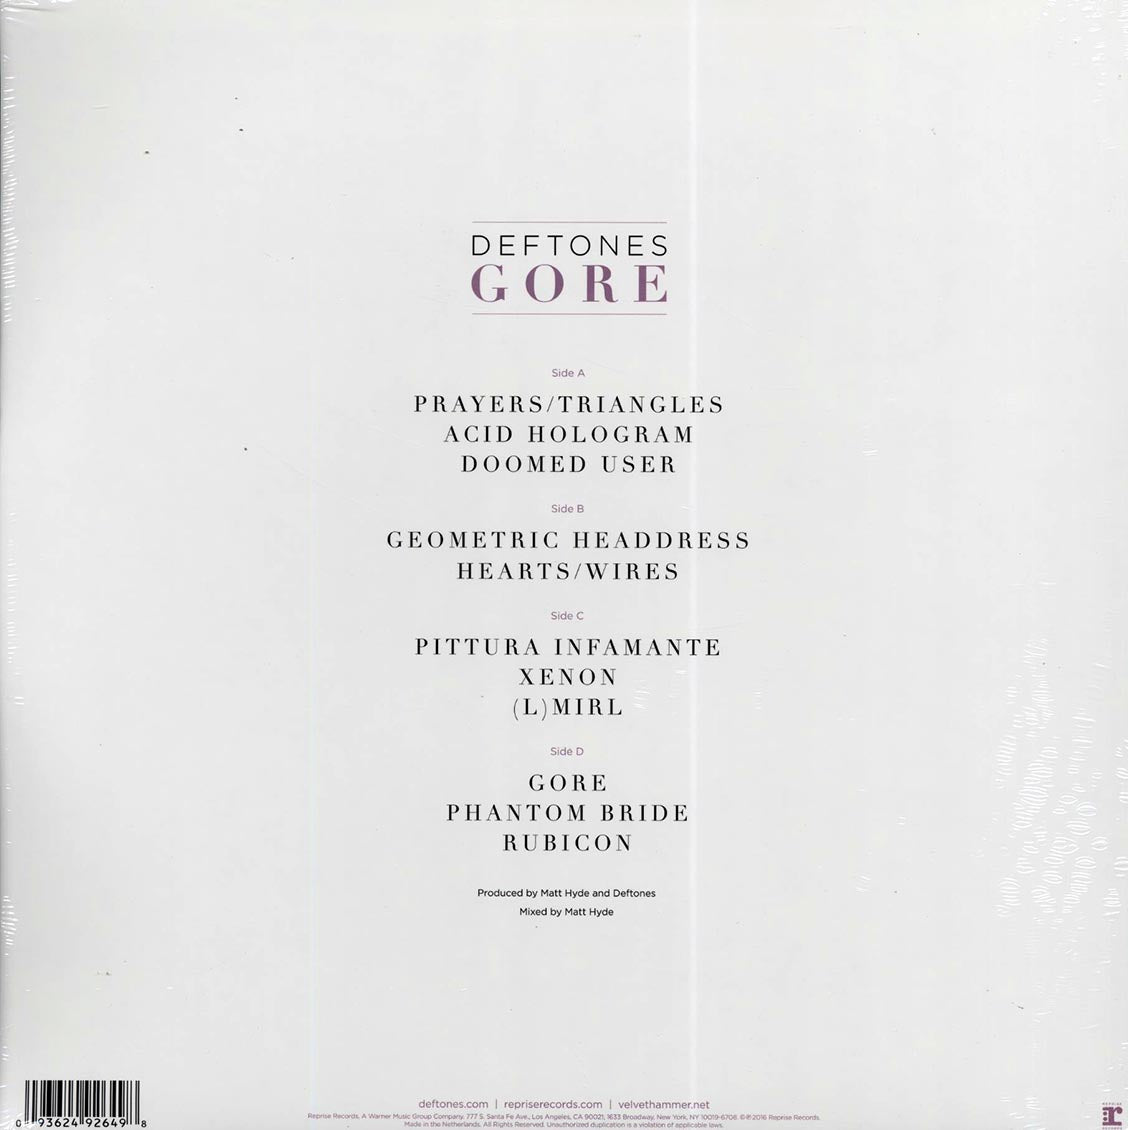 Deftones - Gore (2xLP) - Vinyl LP, LP